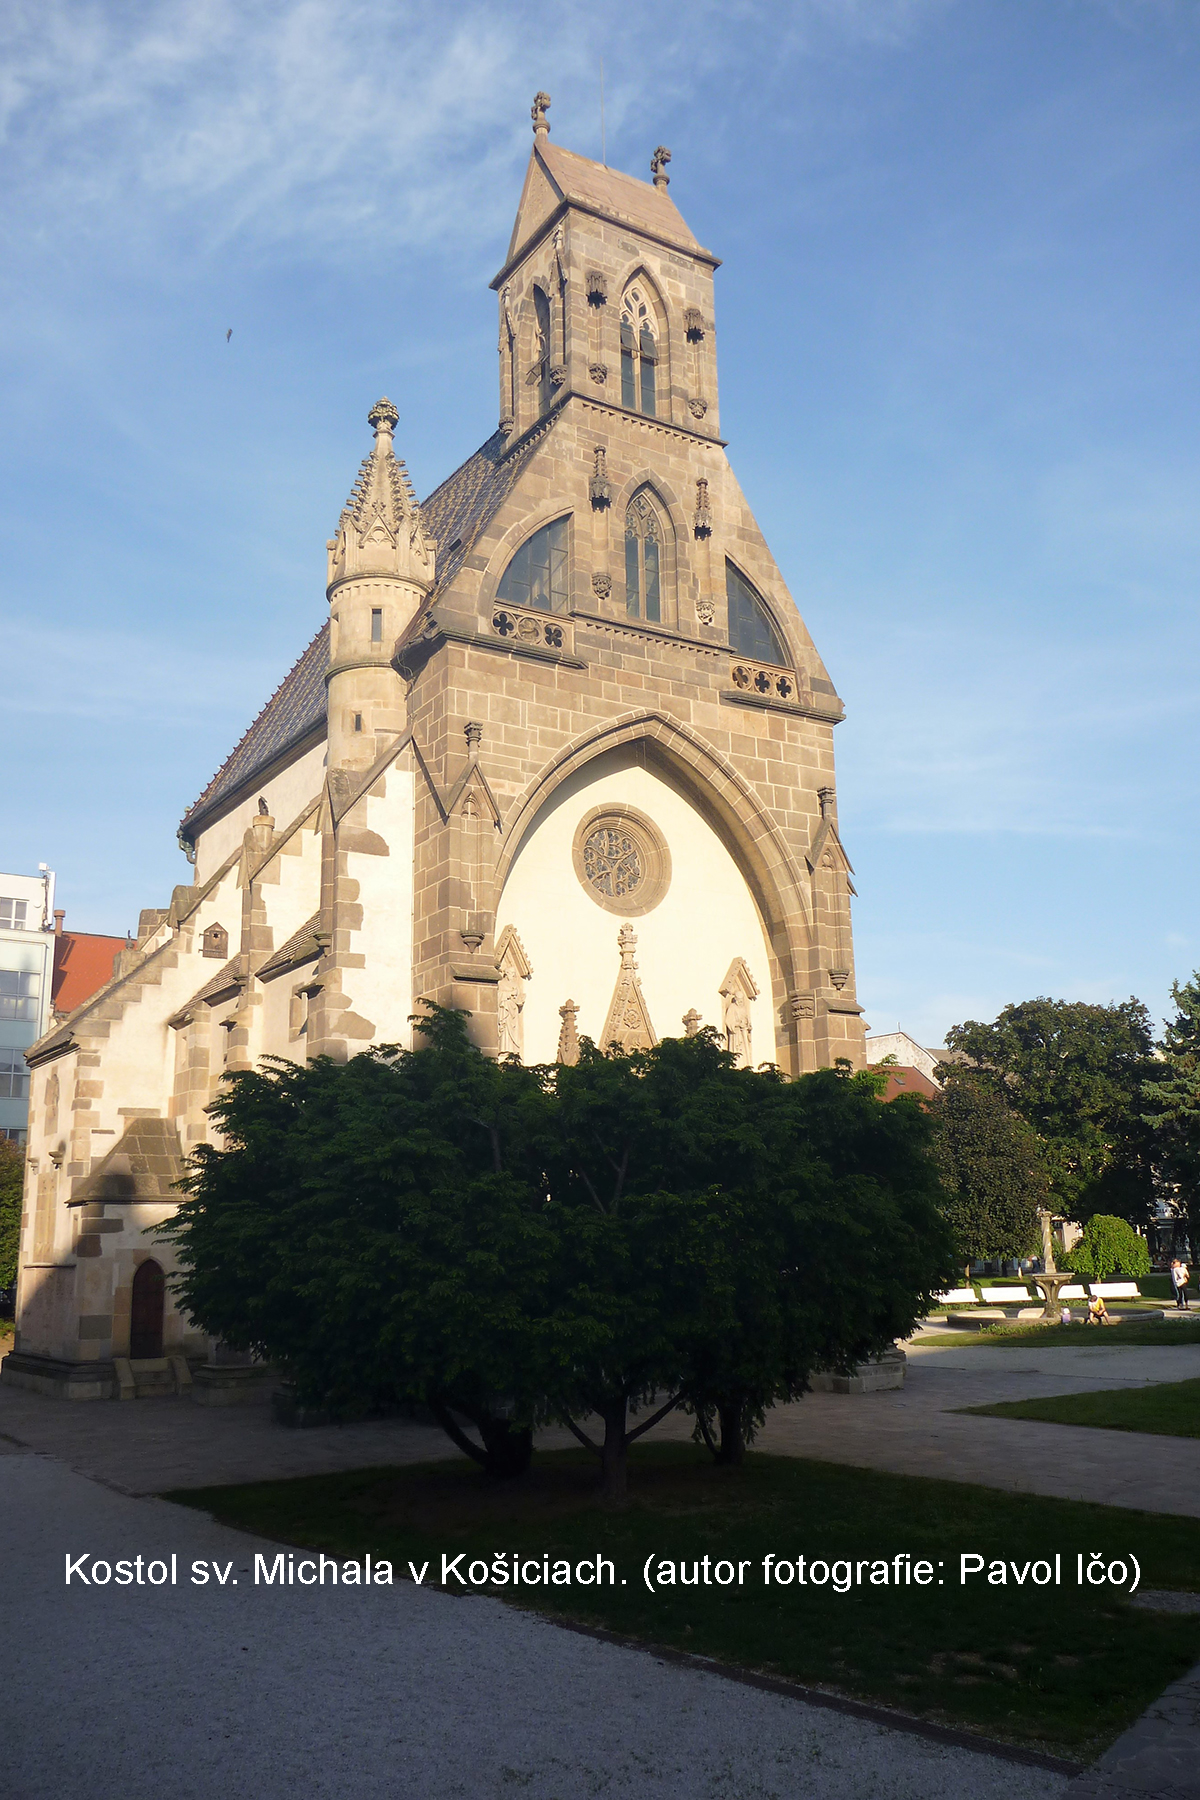 Kostol sv. Michala v Košiciach